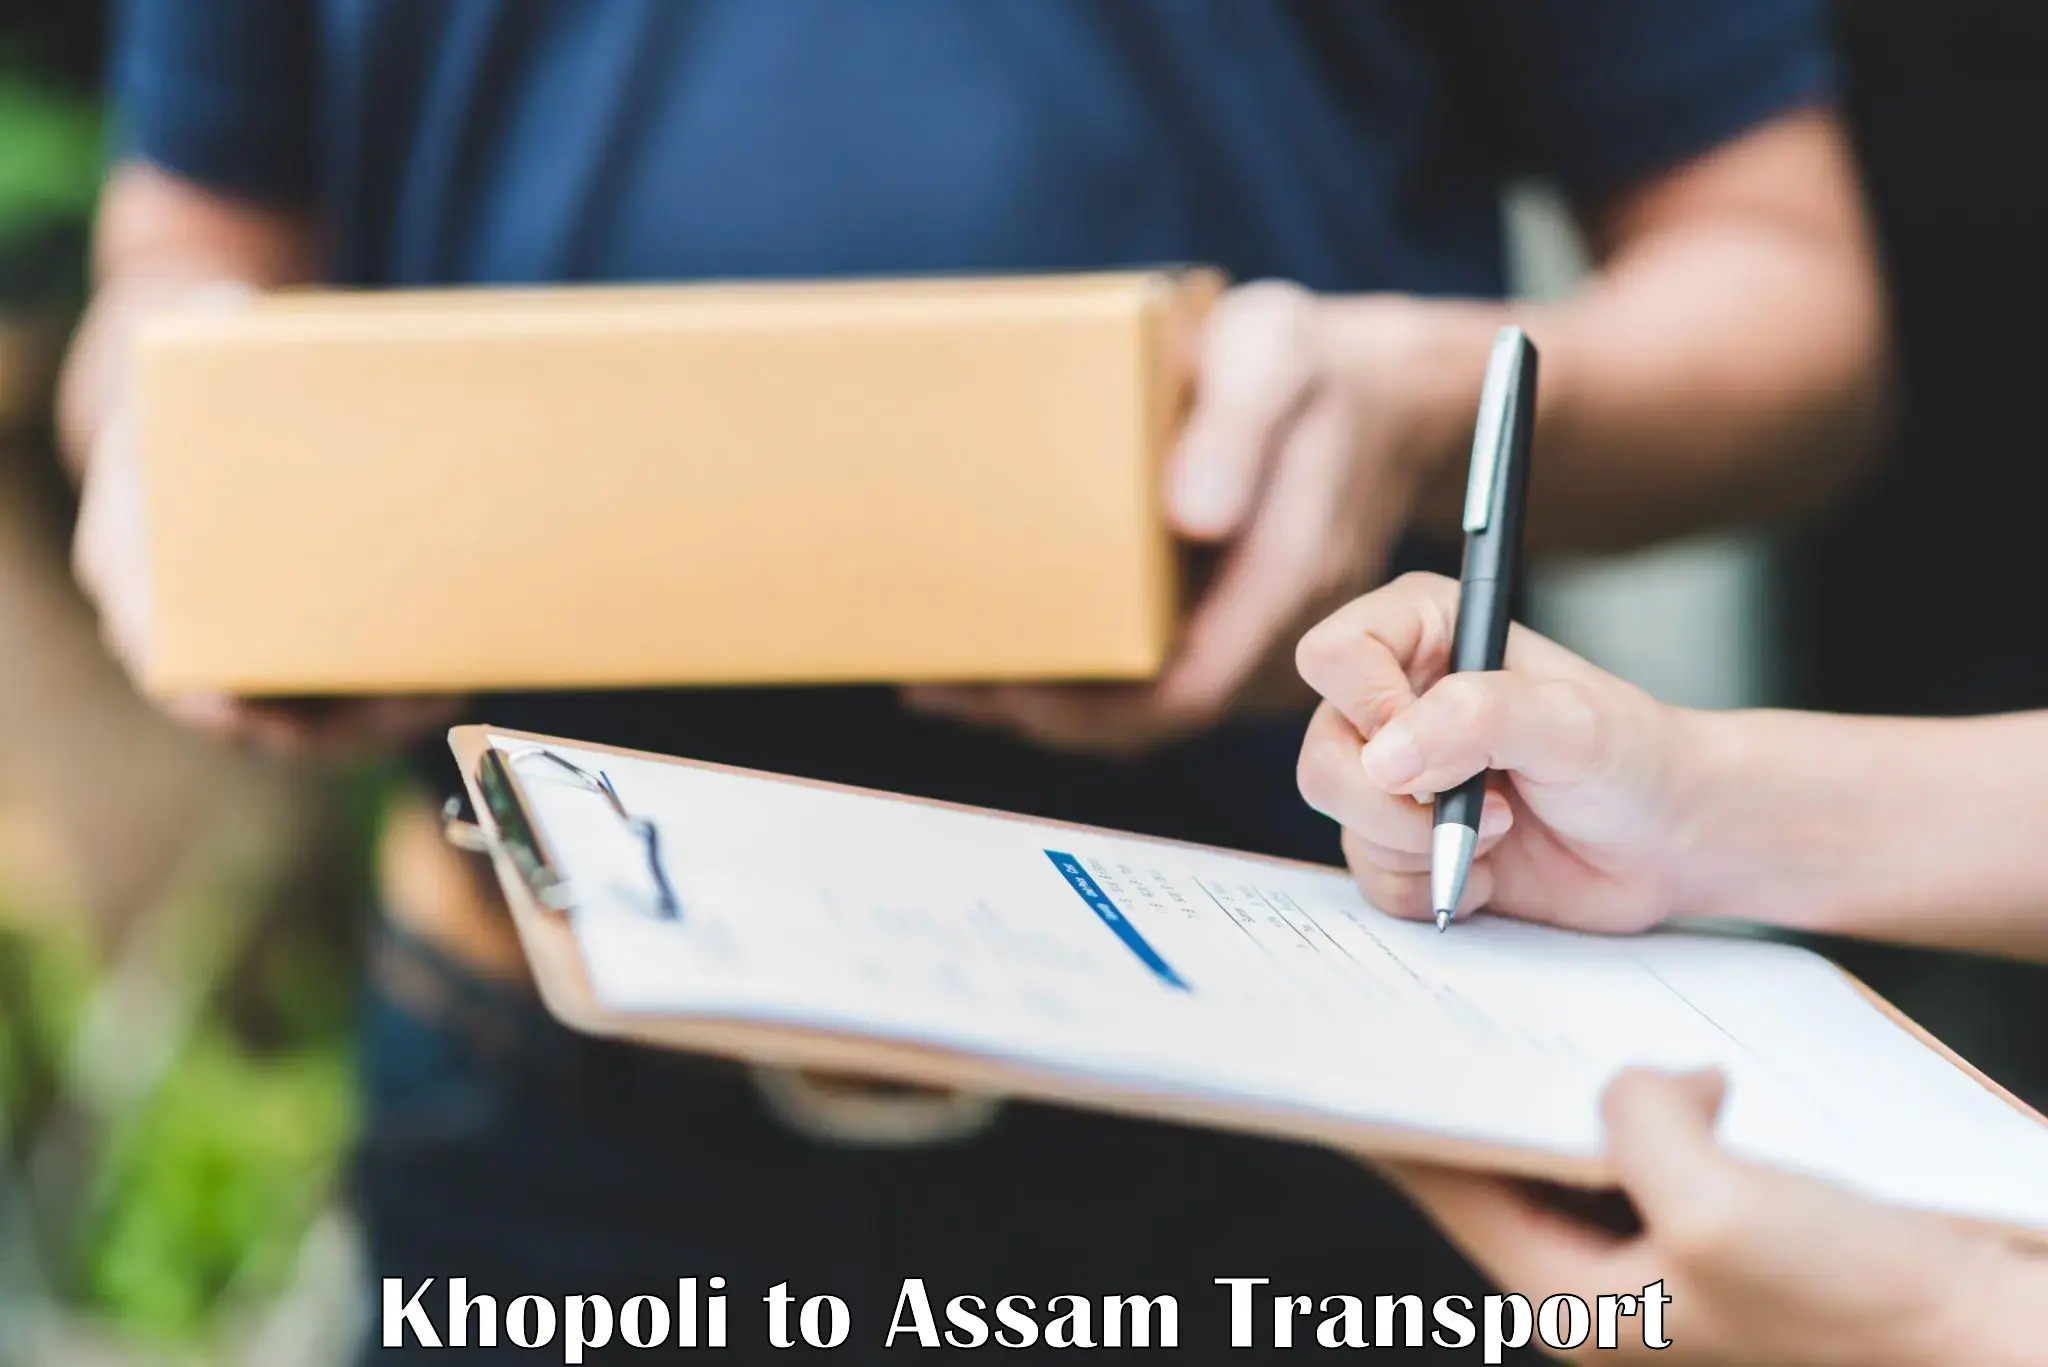 Delivery service Khopoli to Fekamari